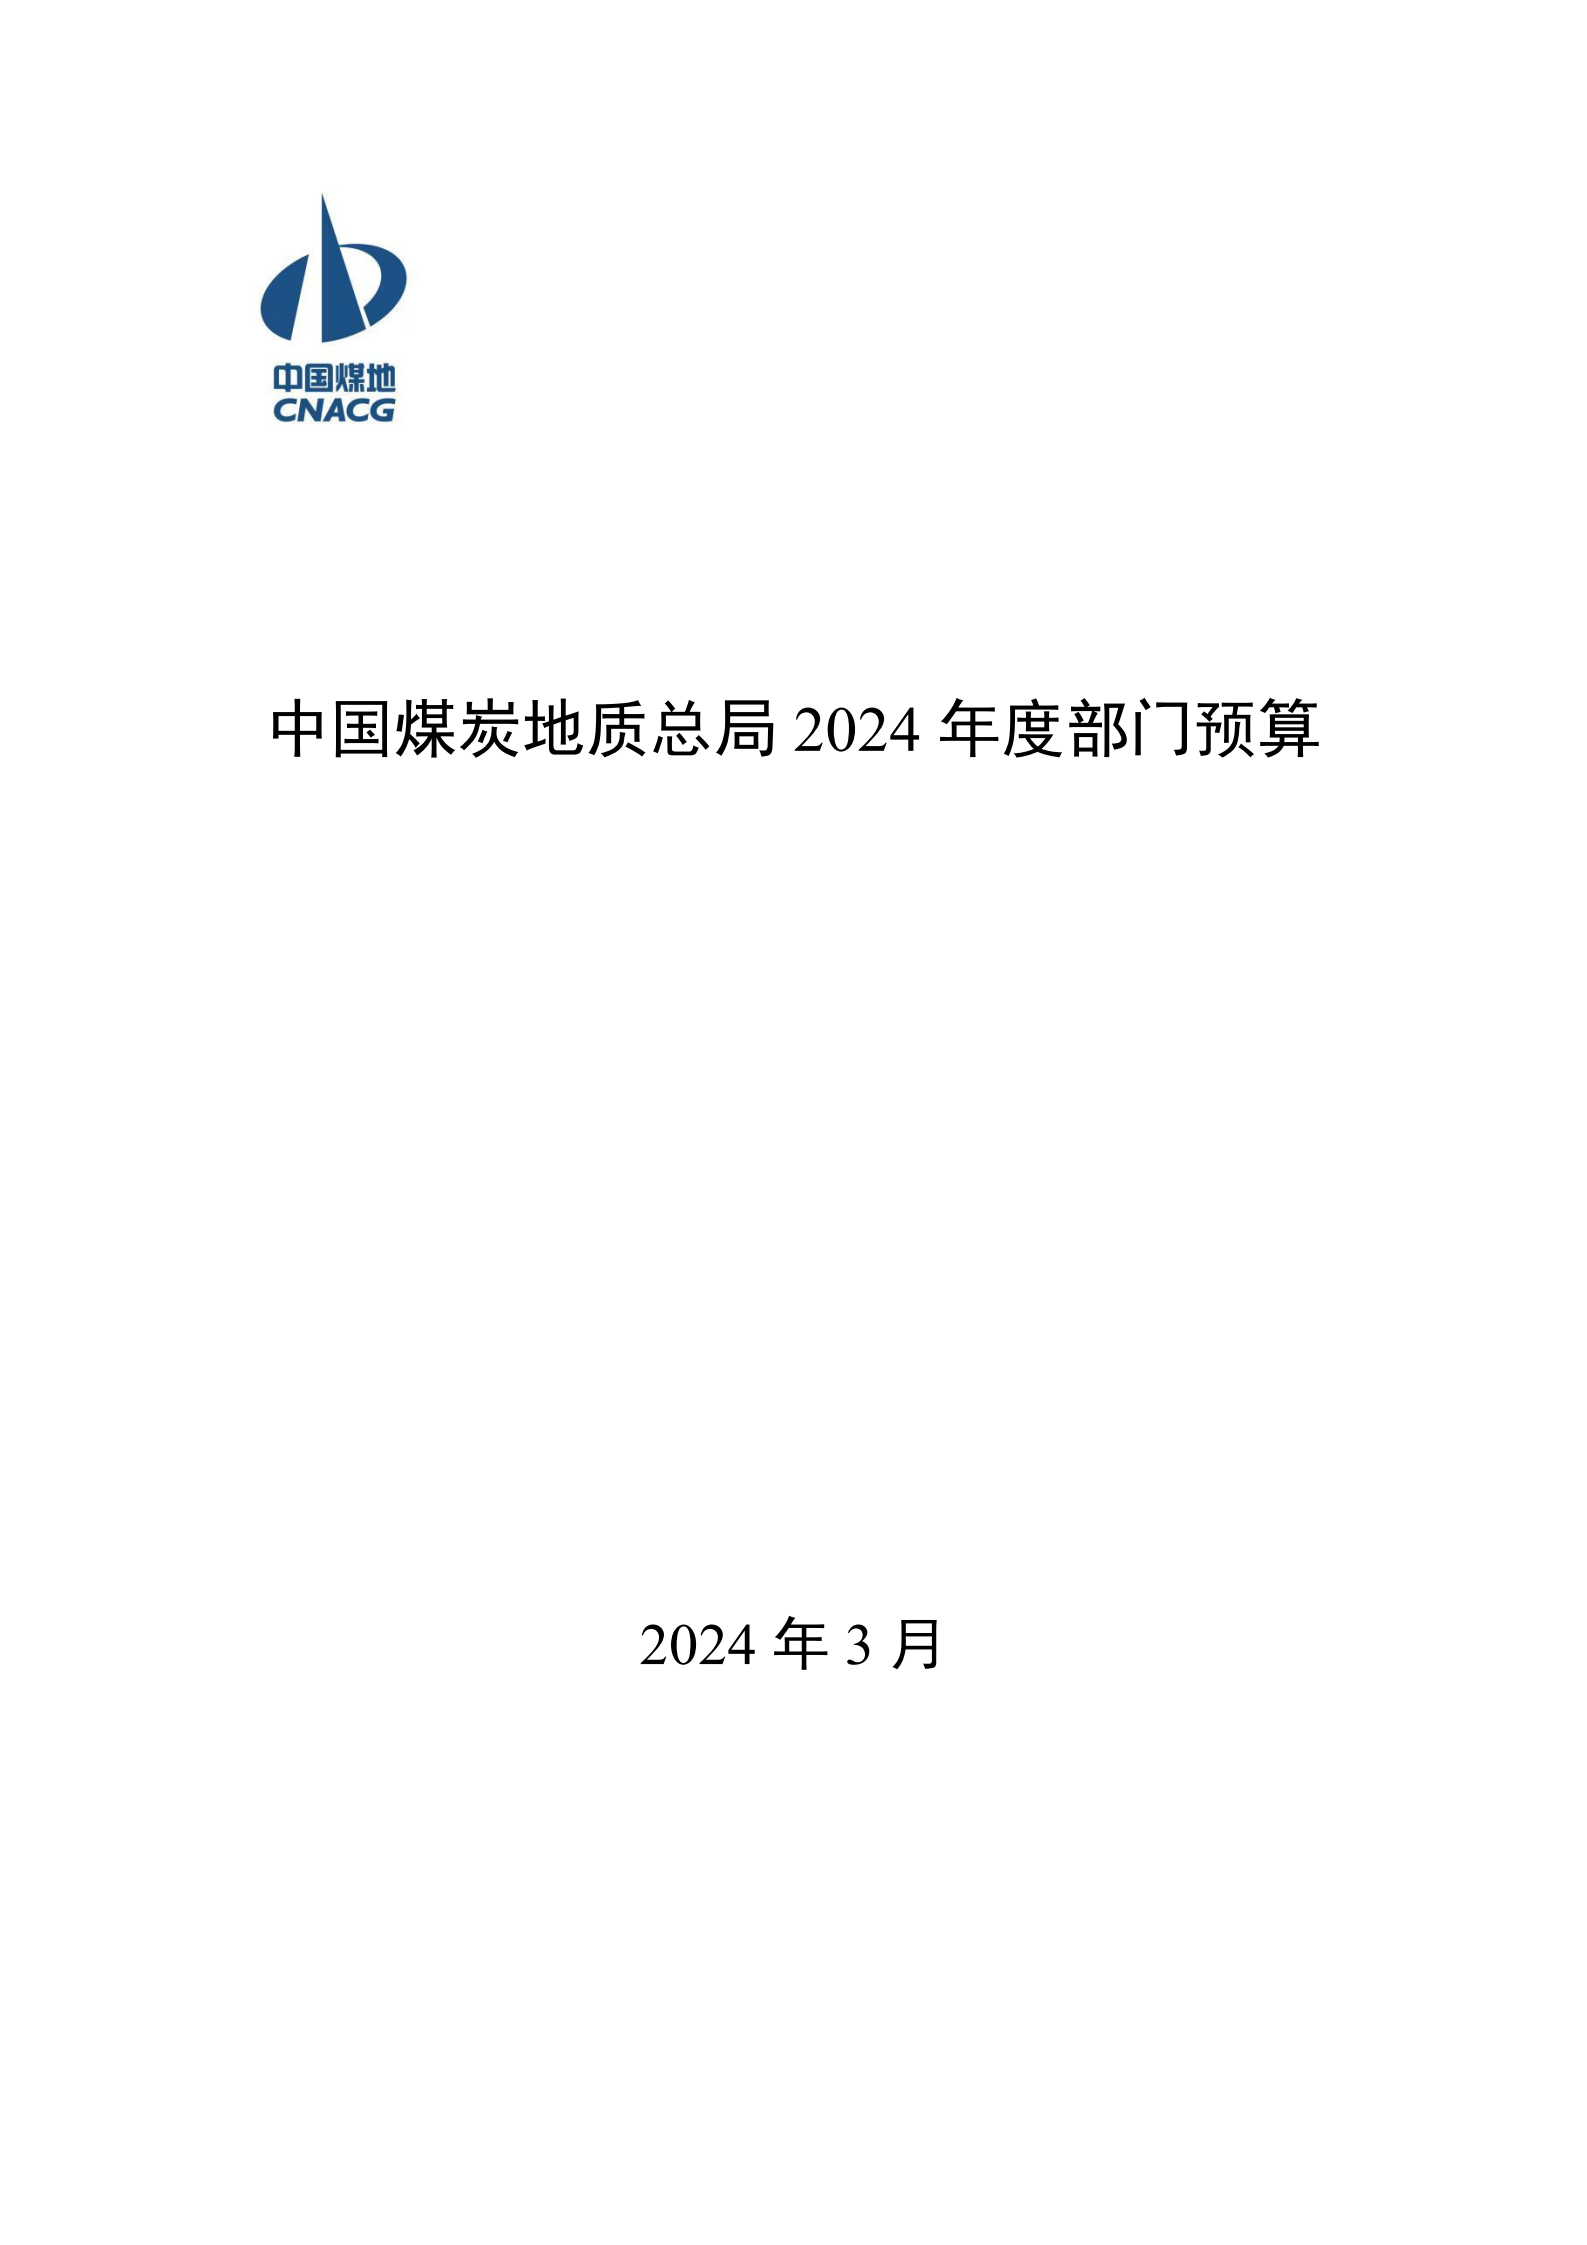 提取自接受修改-833精准内部一肖2024年度部门预算信息公开（2024#1.png